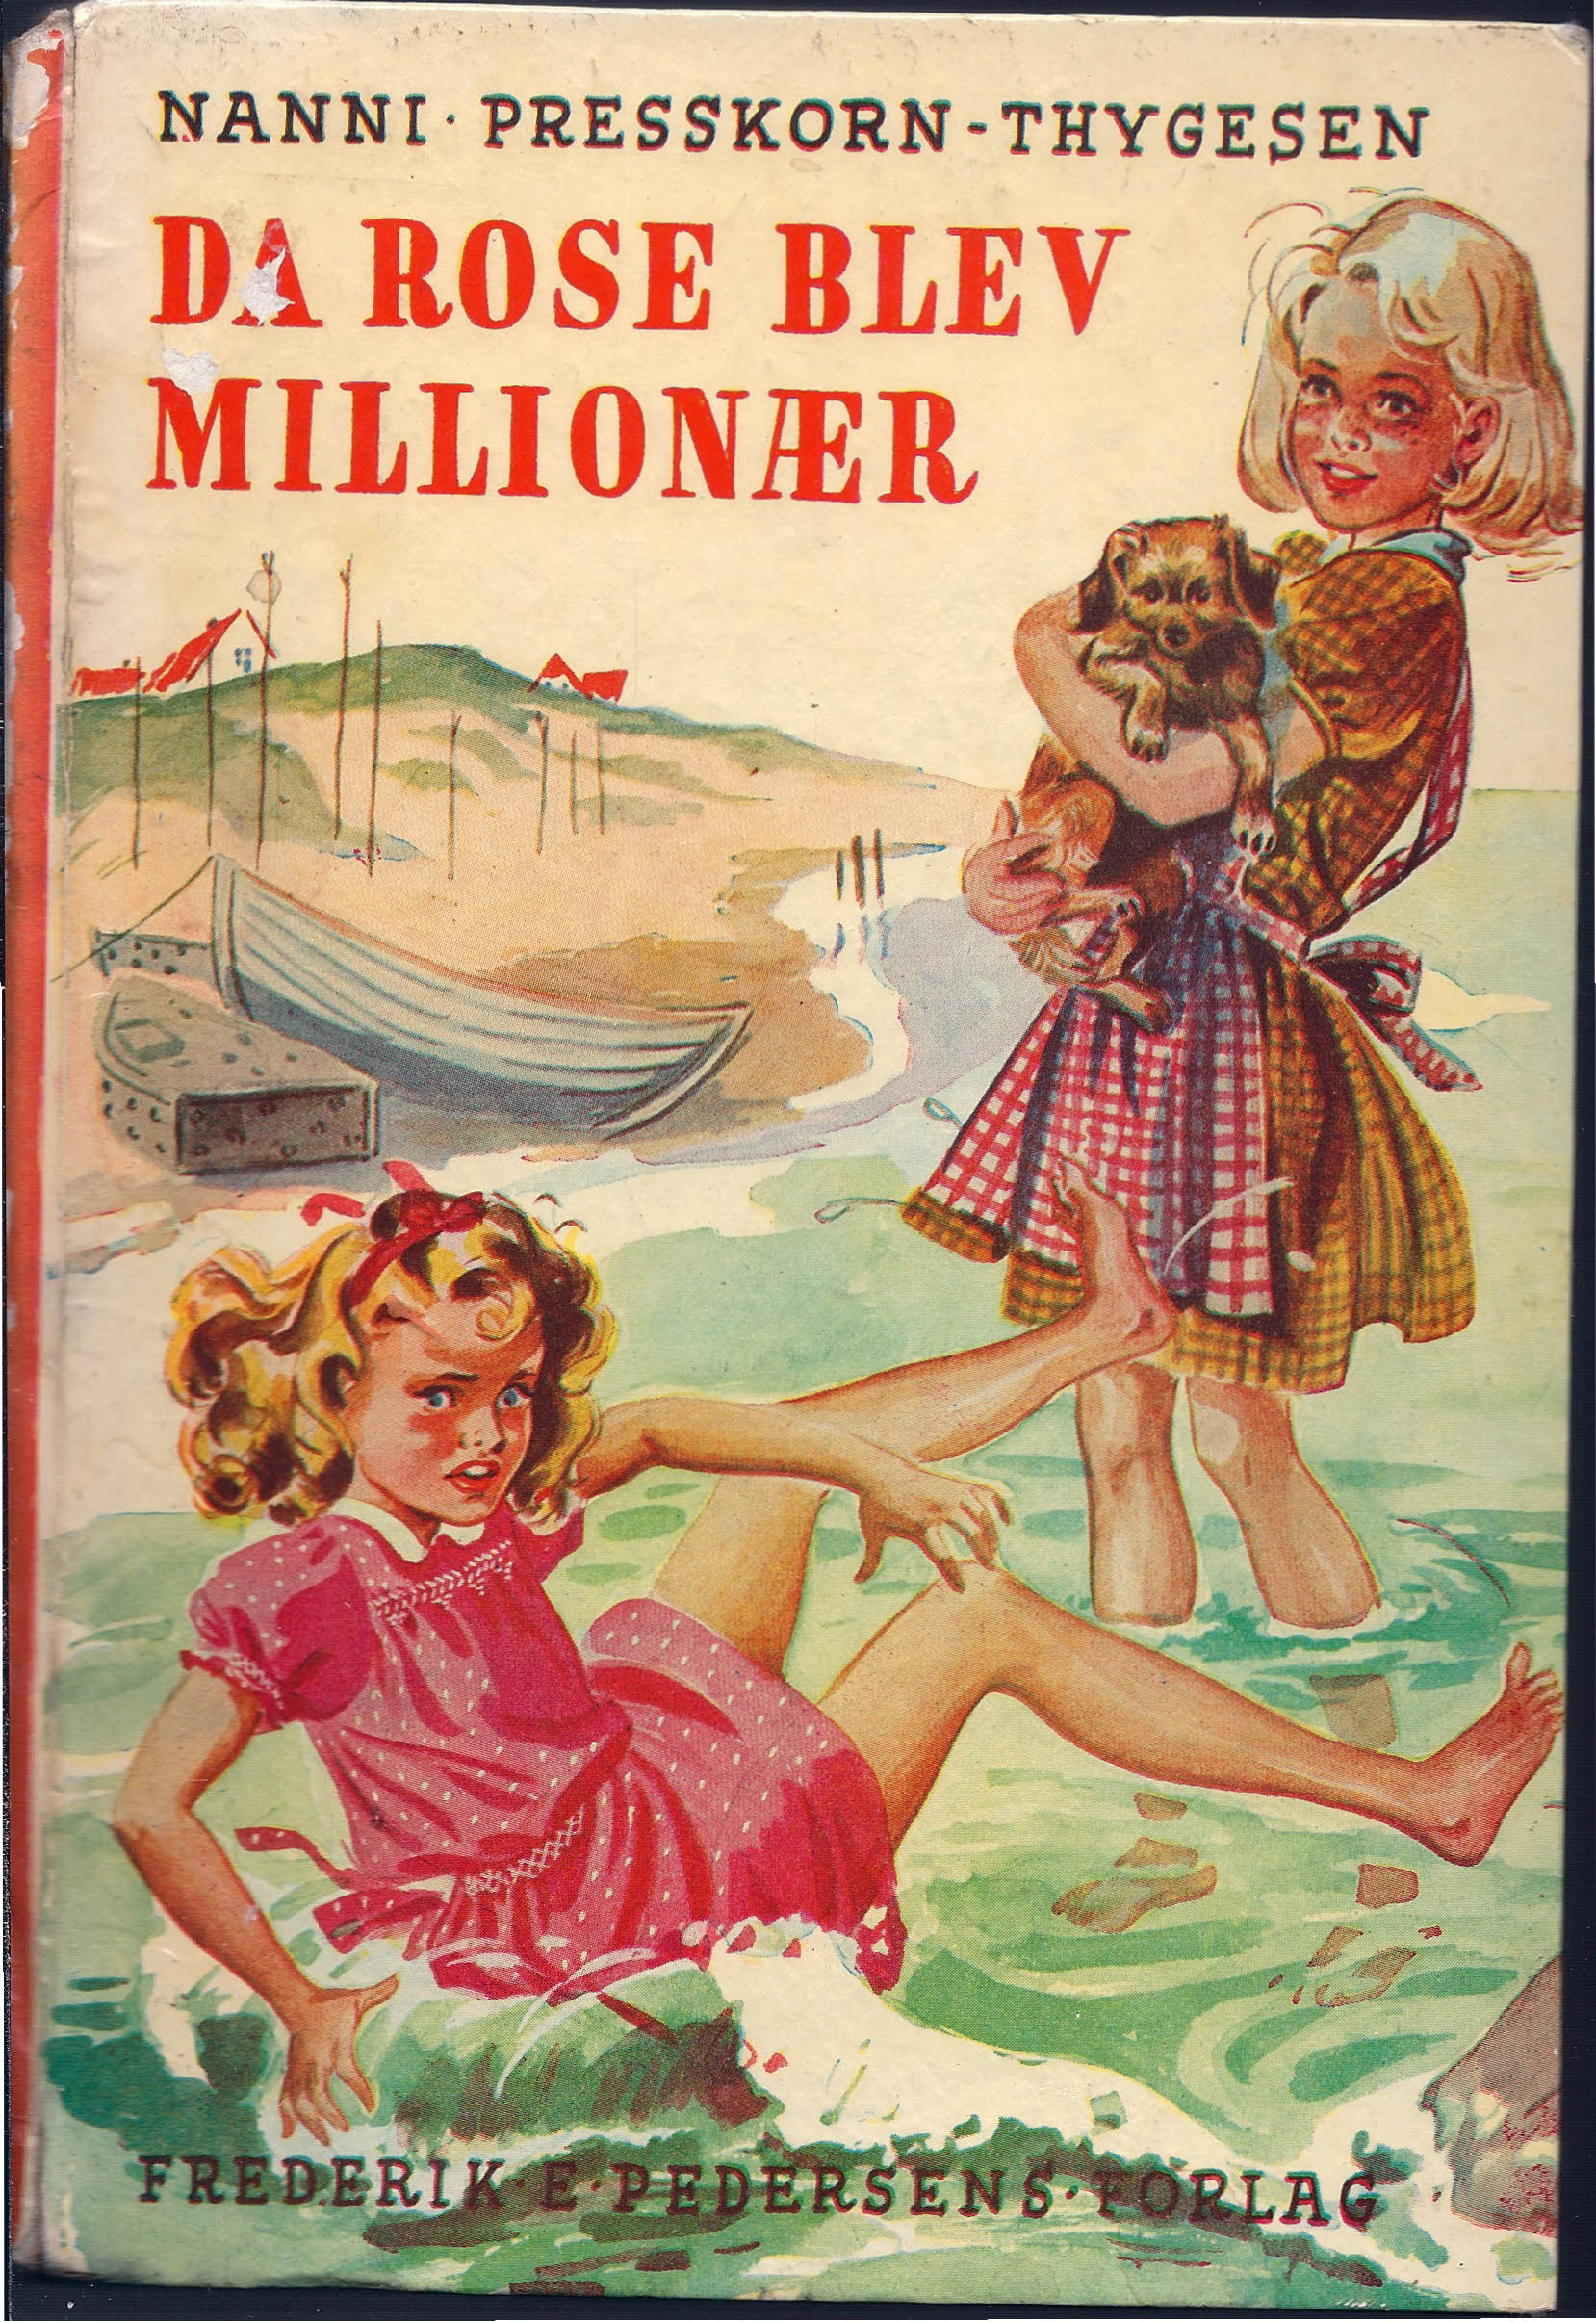 Da Rose blev millionær - Nanni Presskorn-Thygesen 1927-1